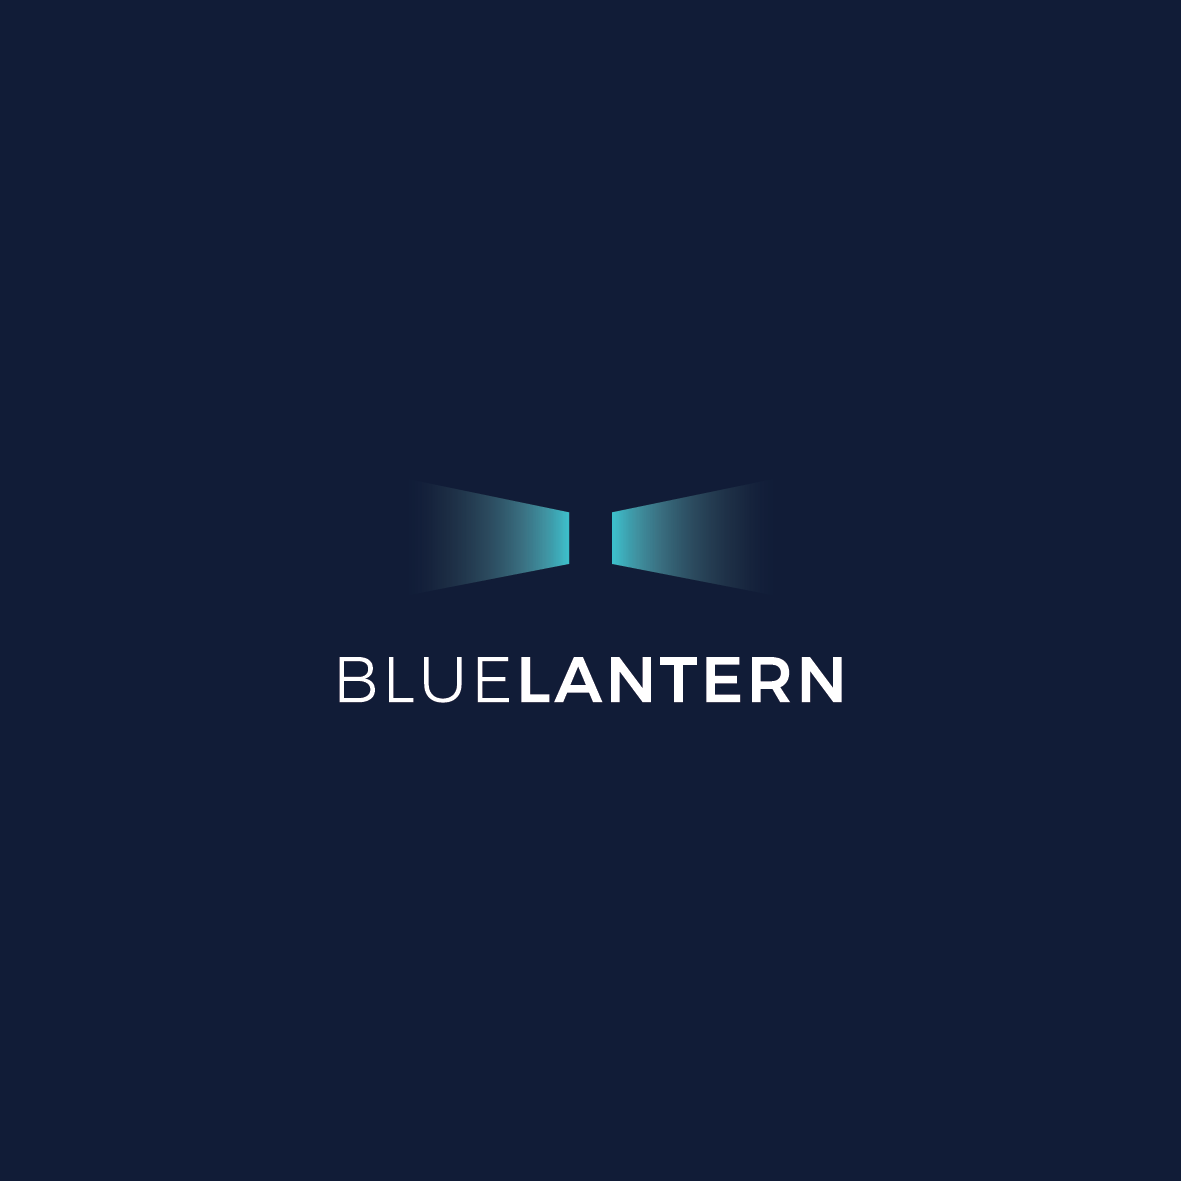 BlueLantern.io